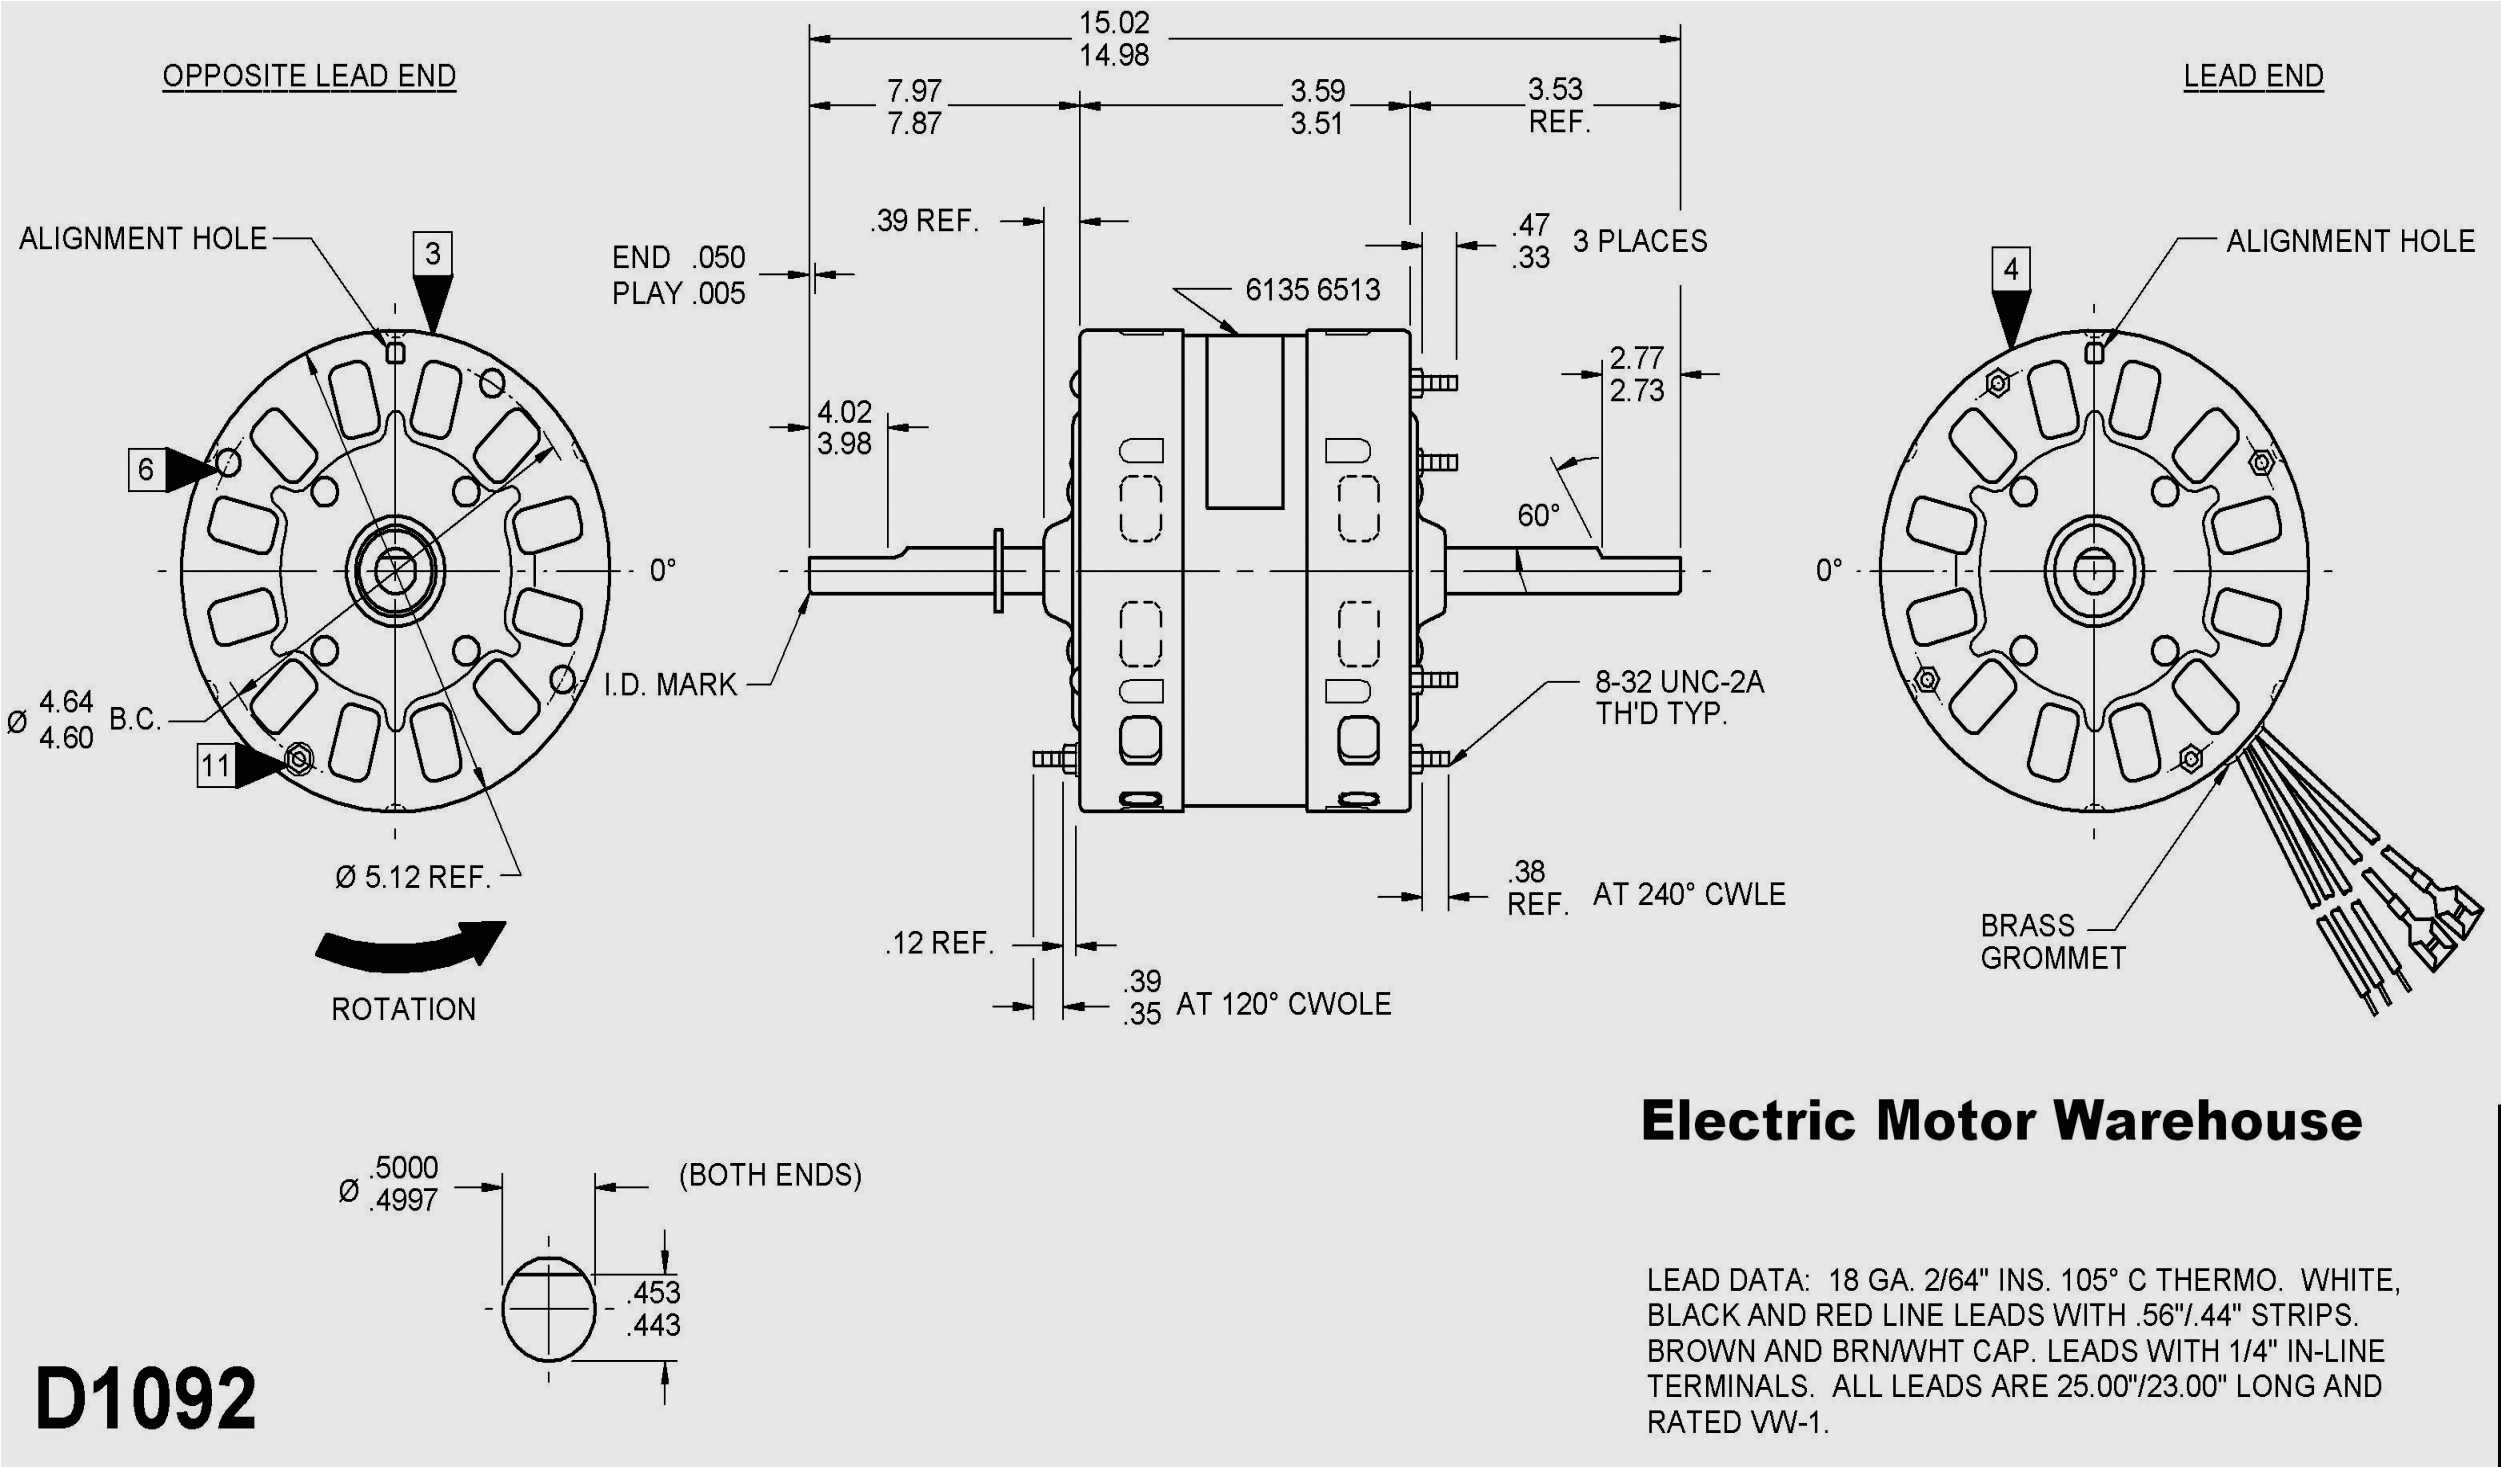 wiring diagram dayton ac electric motor save fan fresh furnace rh wikiduh dayton motor wiring schematic dayton motor wiring schematic